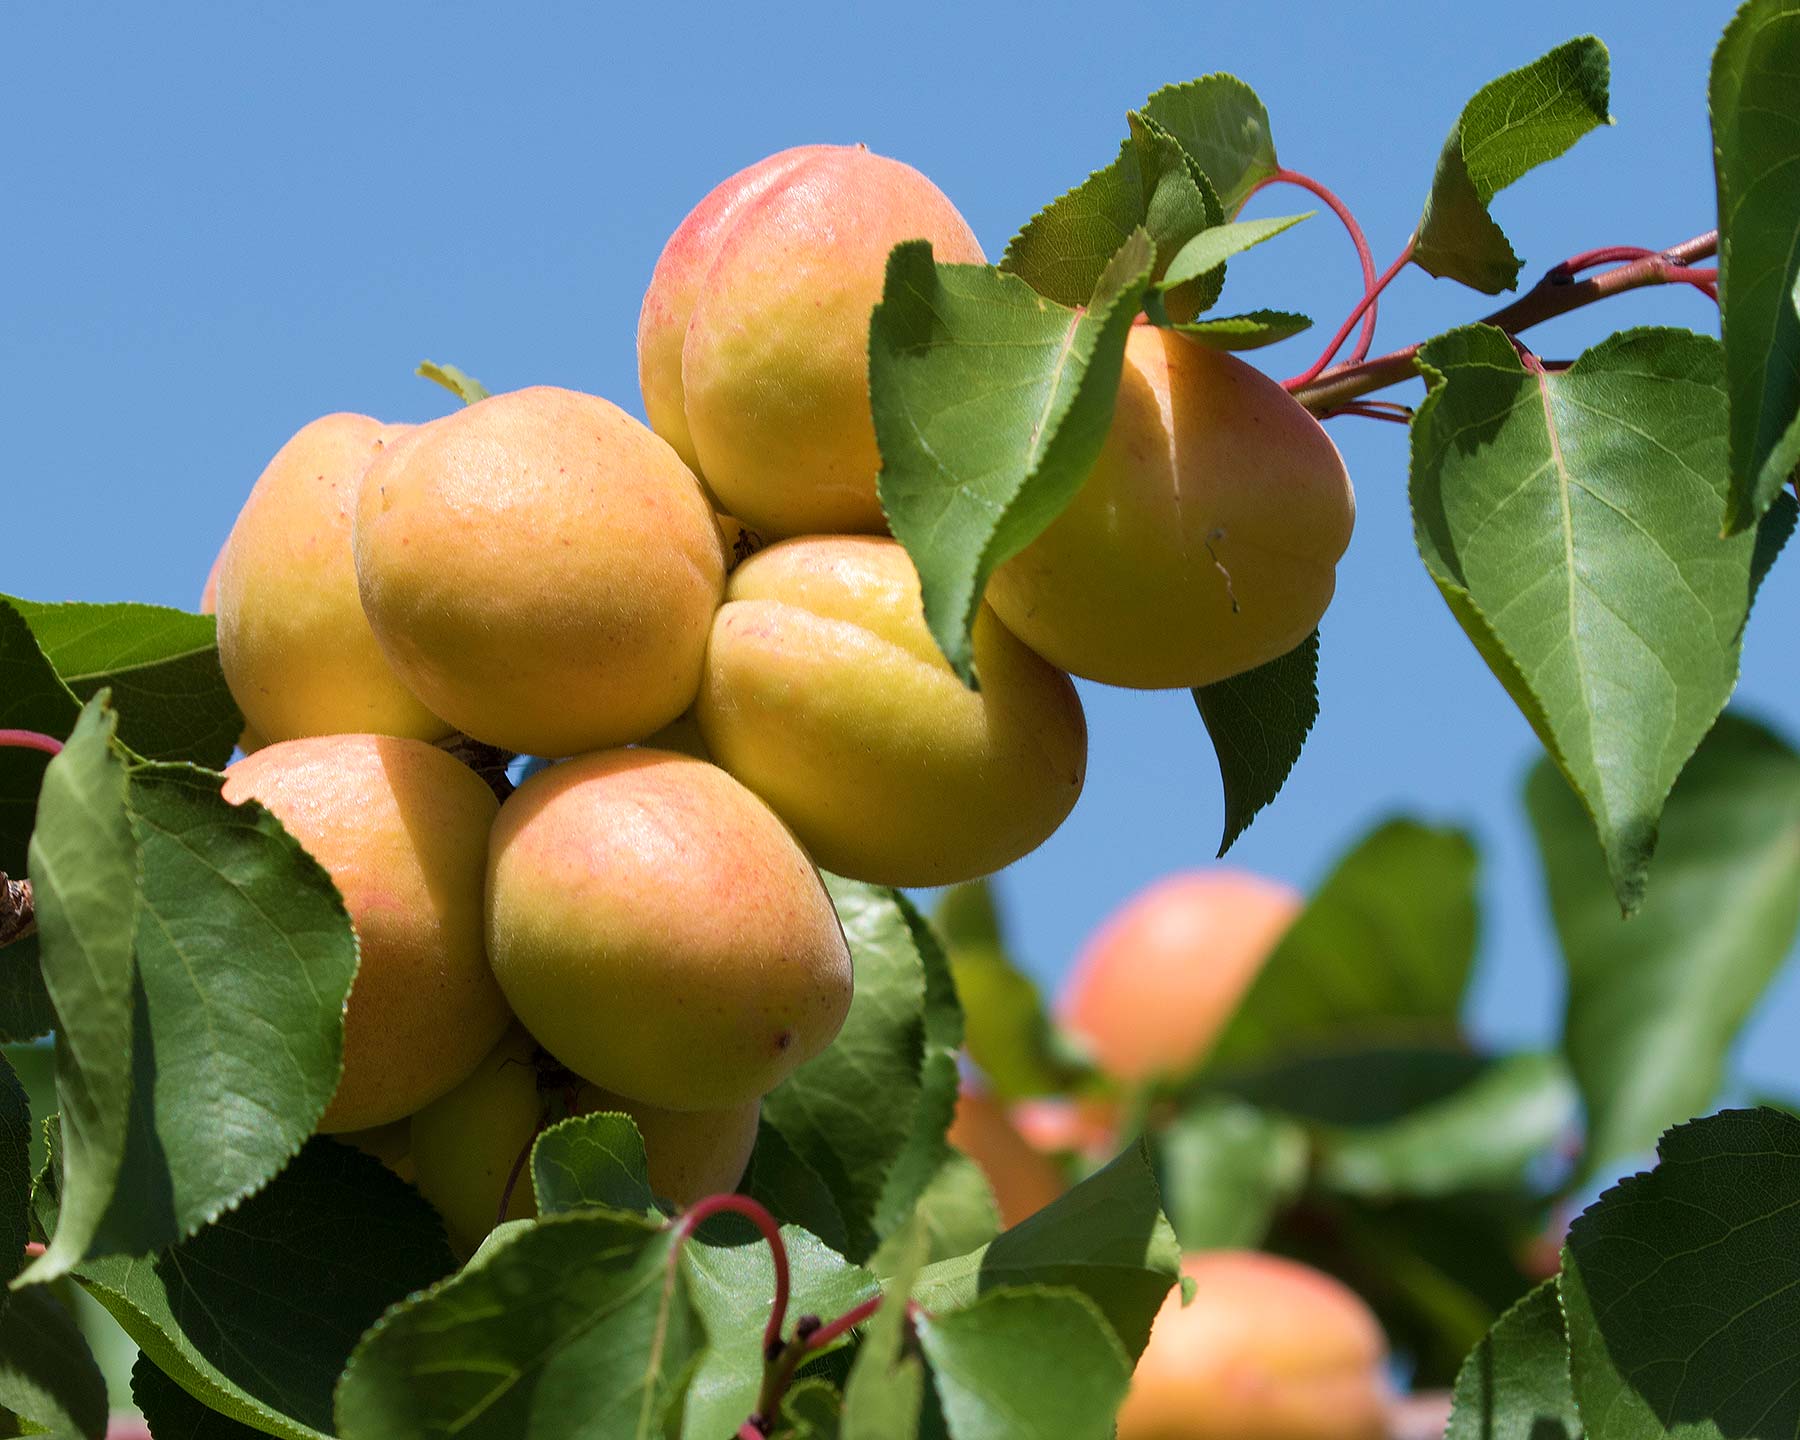 Prunus armeniaca - Apricots ready for picking - photo Zeynel Cebeci